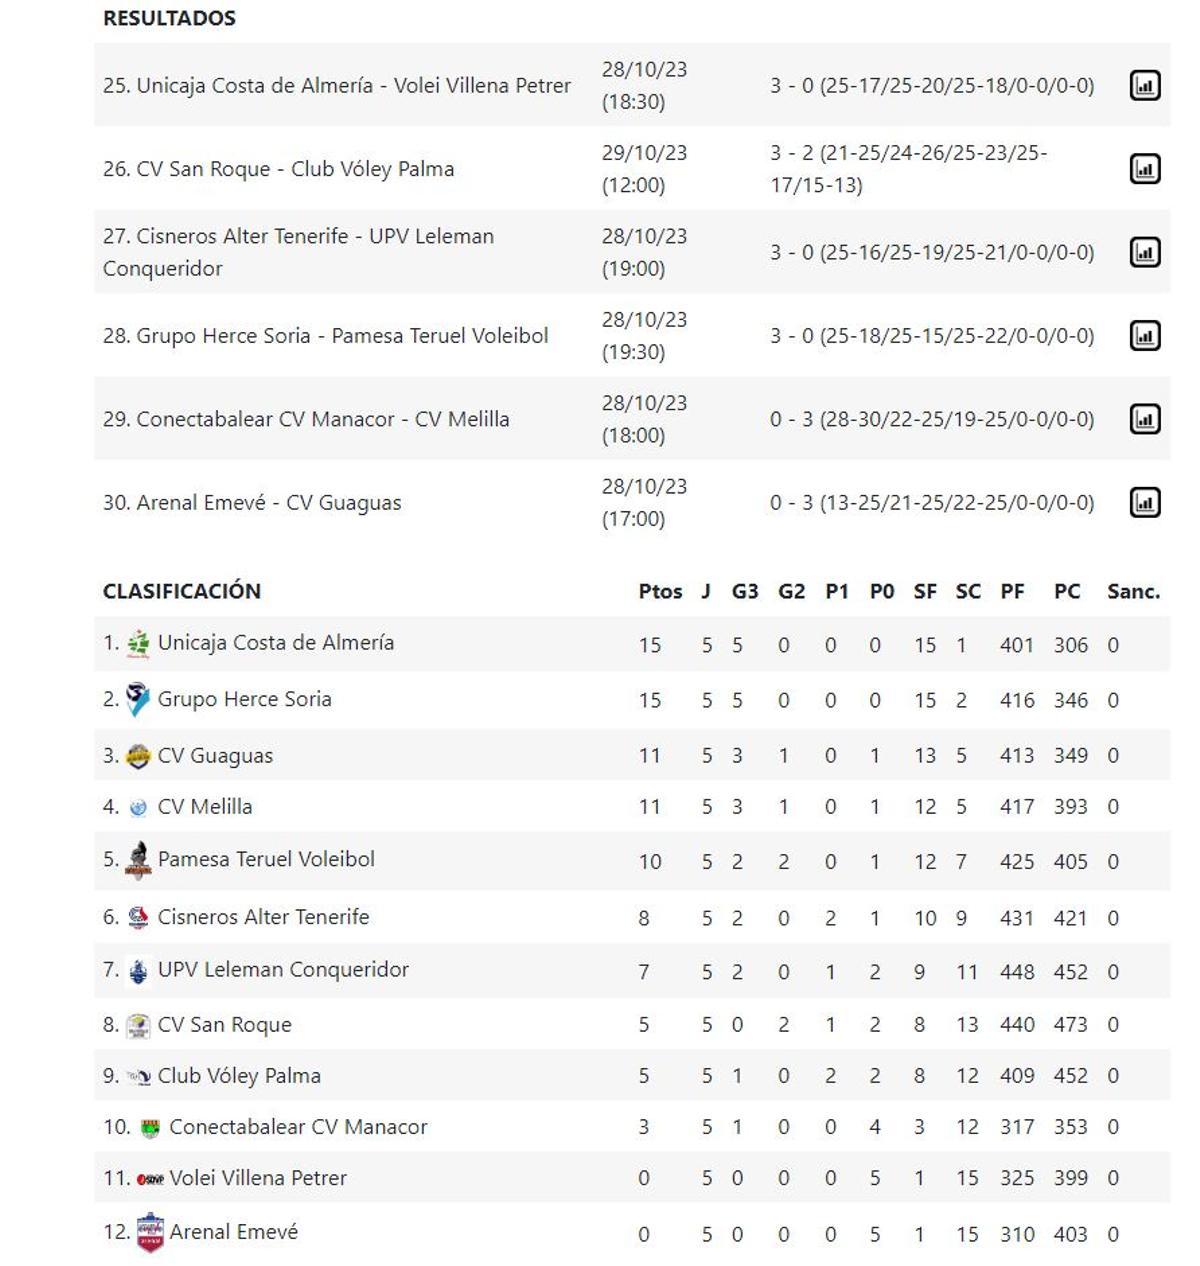 Resultados y clasificación de la Superliga masculina.